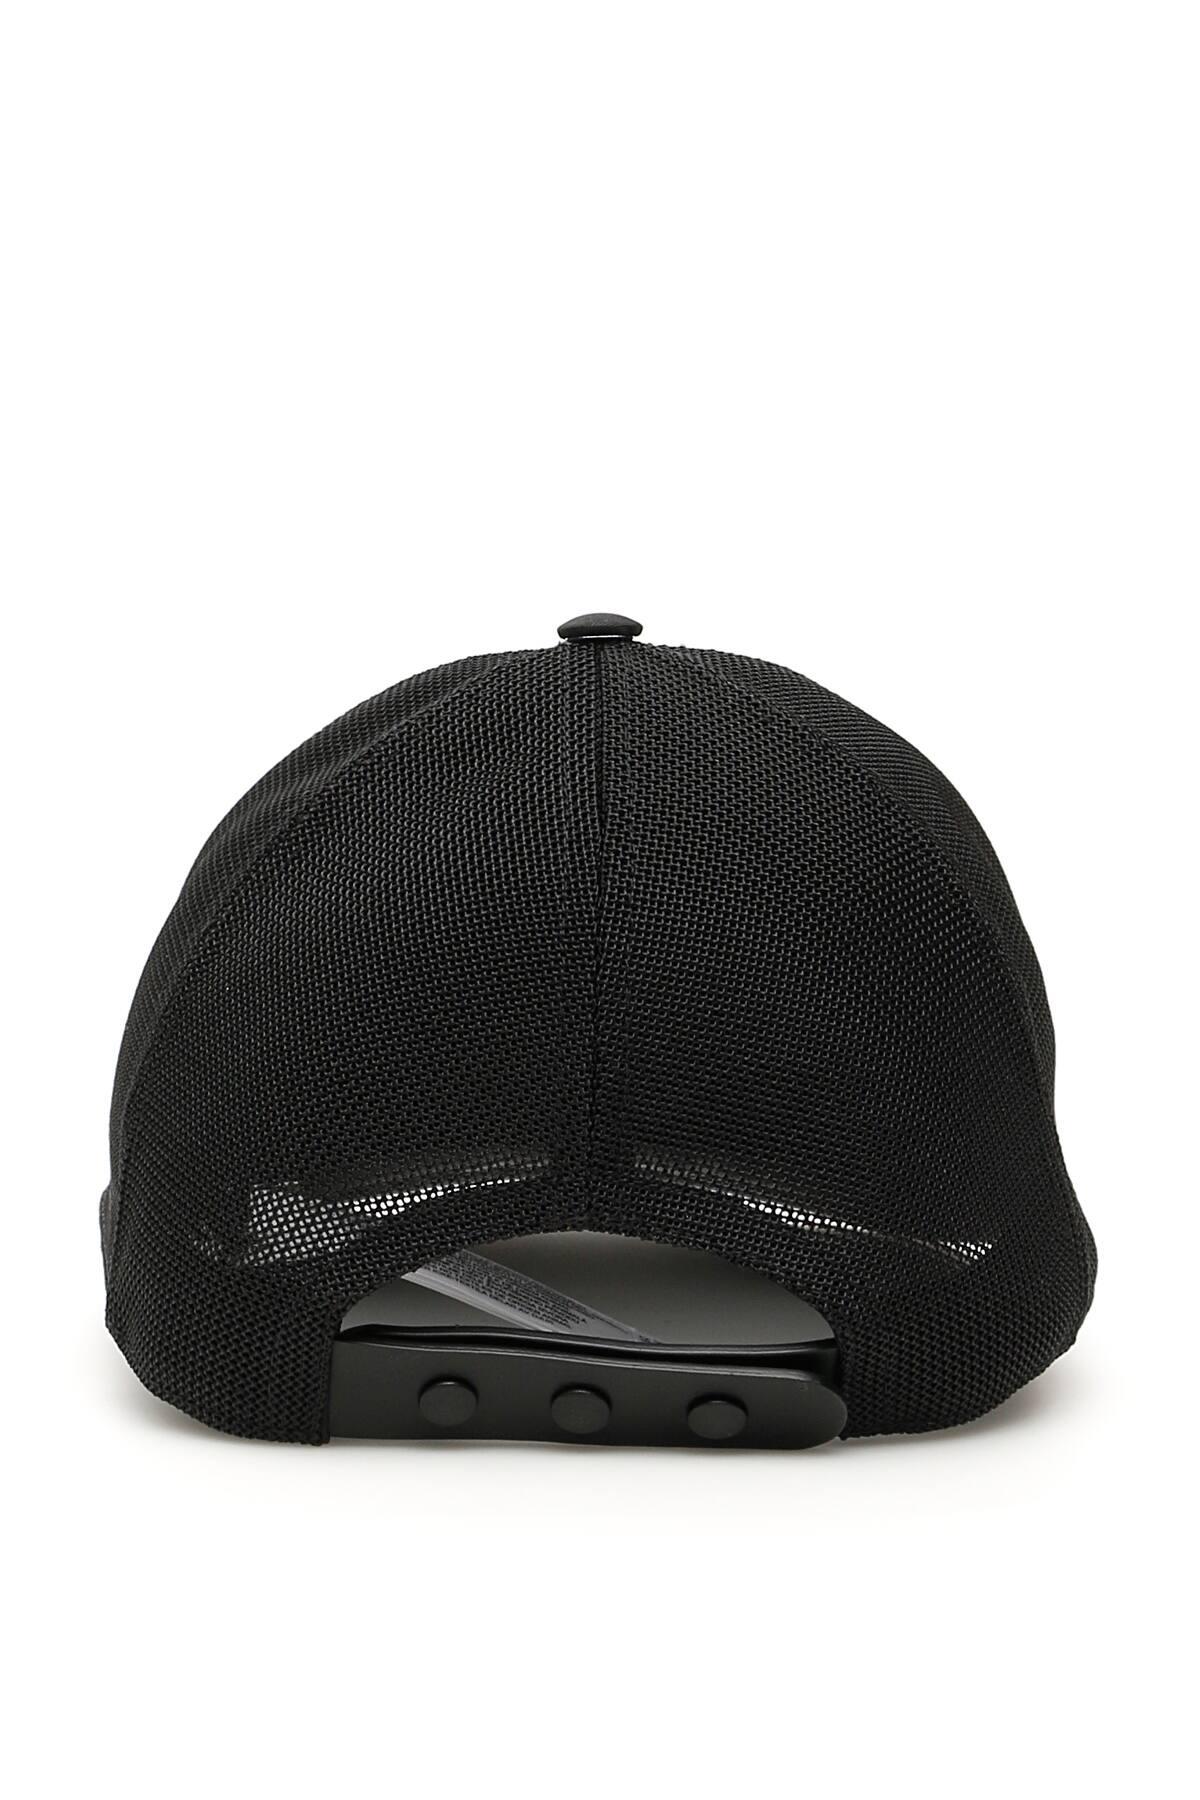 Burberry Black Trucker Hat for Men | Lyst